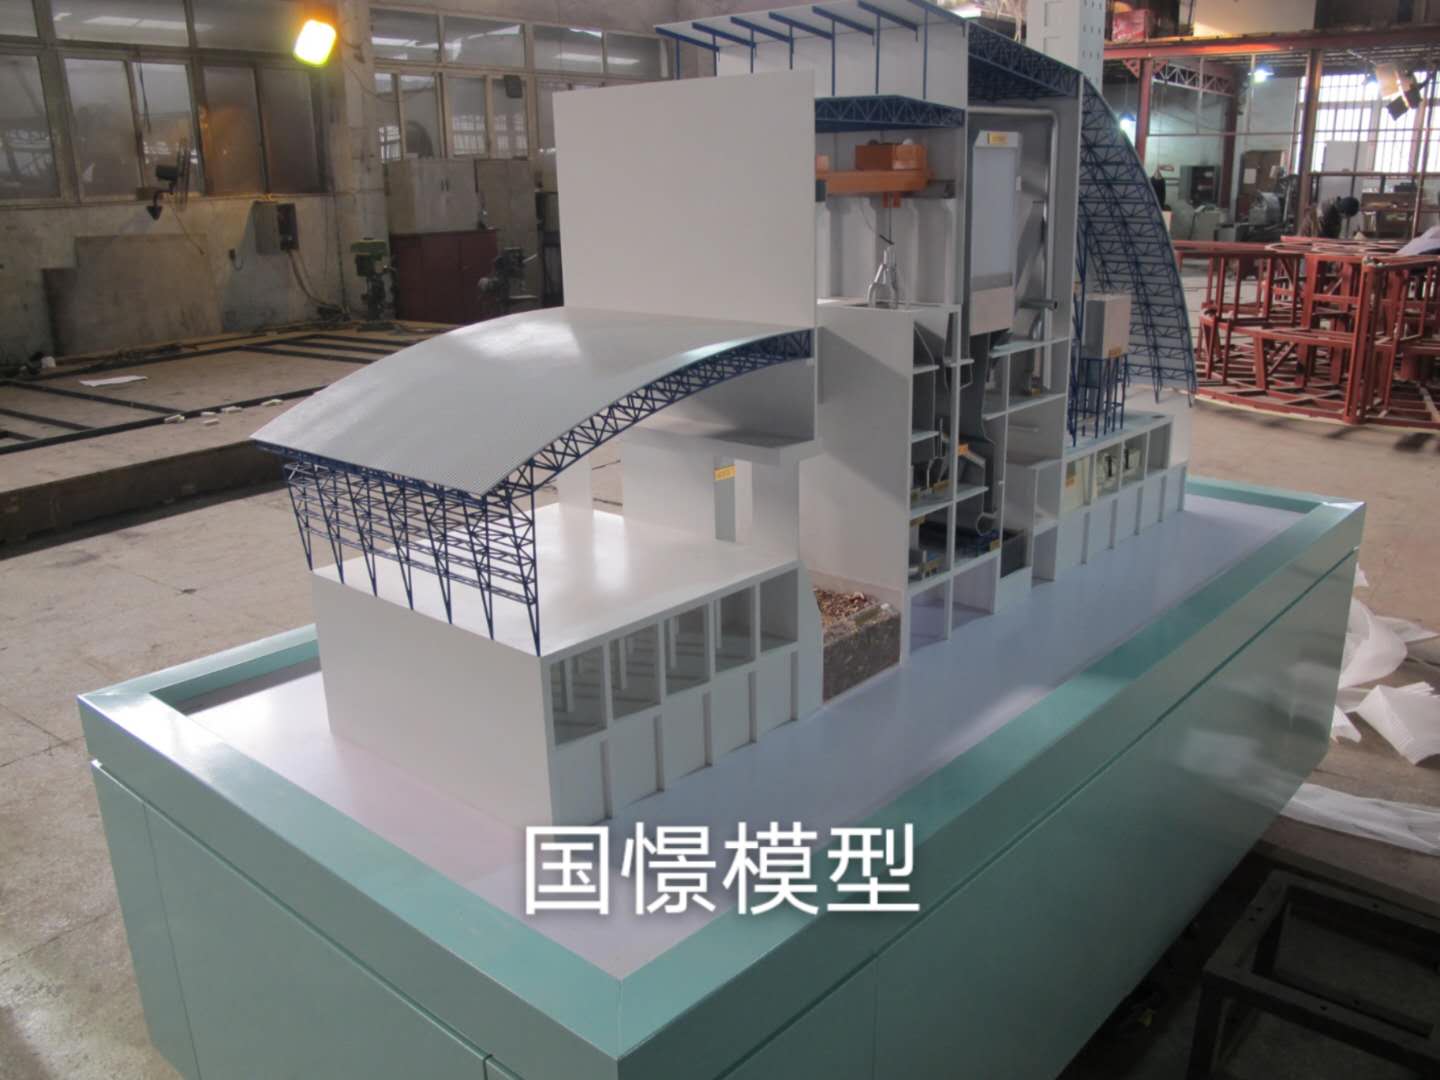 林西县工业模型